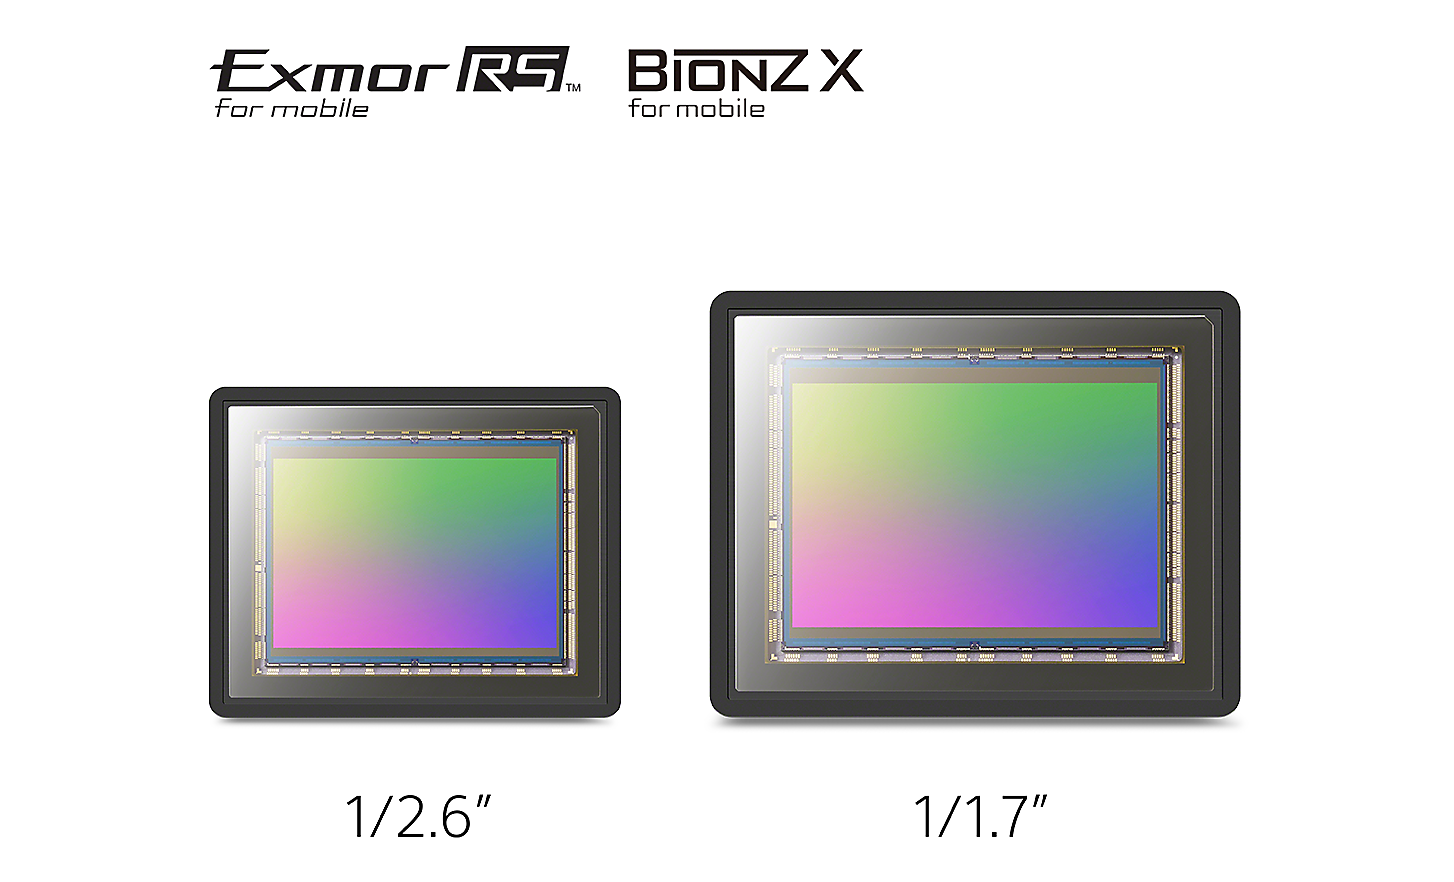 Bild som jämför en 1/2,6-tums bildsensor med en större 1/1,7-tums bildsensor, och logotyper för Exmor RS™ för mobila enheter och Bionz X™ för mobila enheter